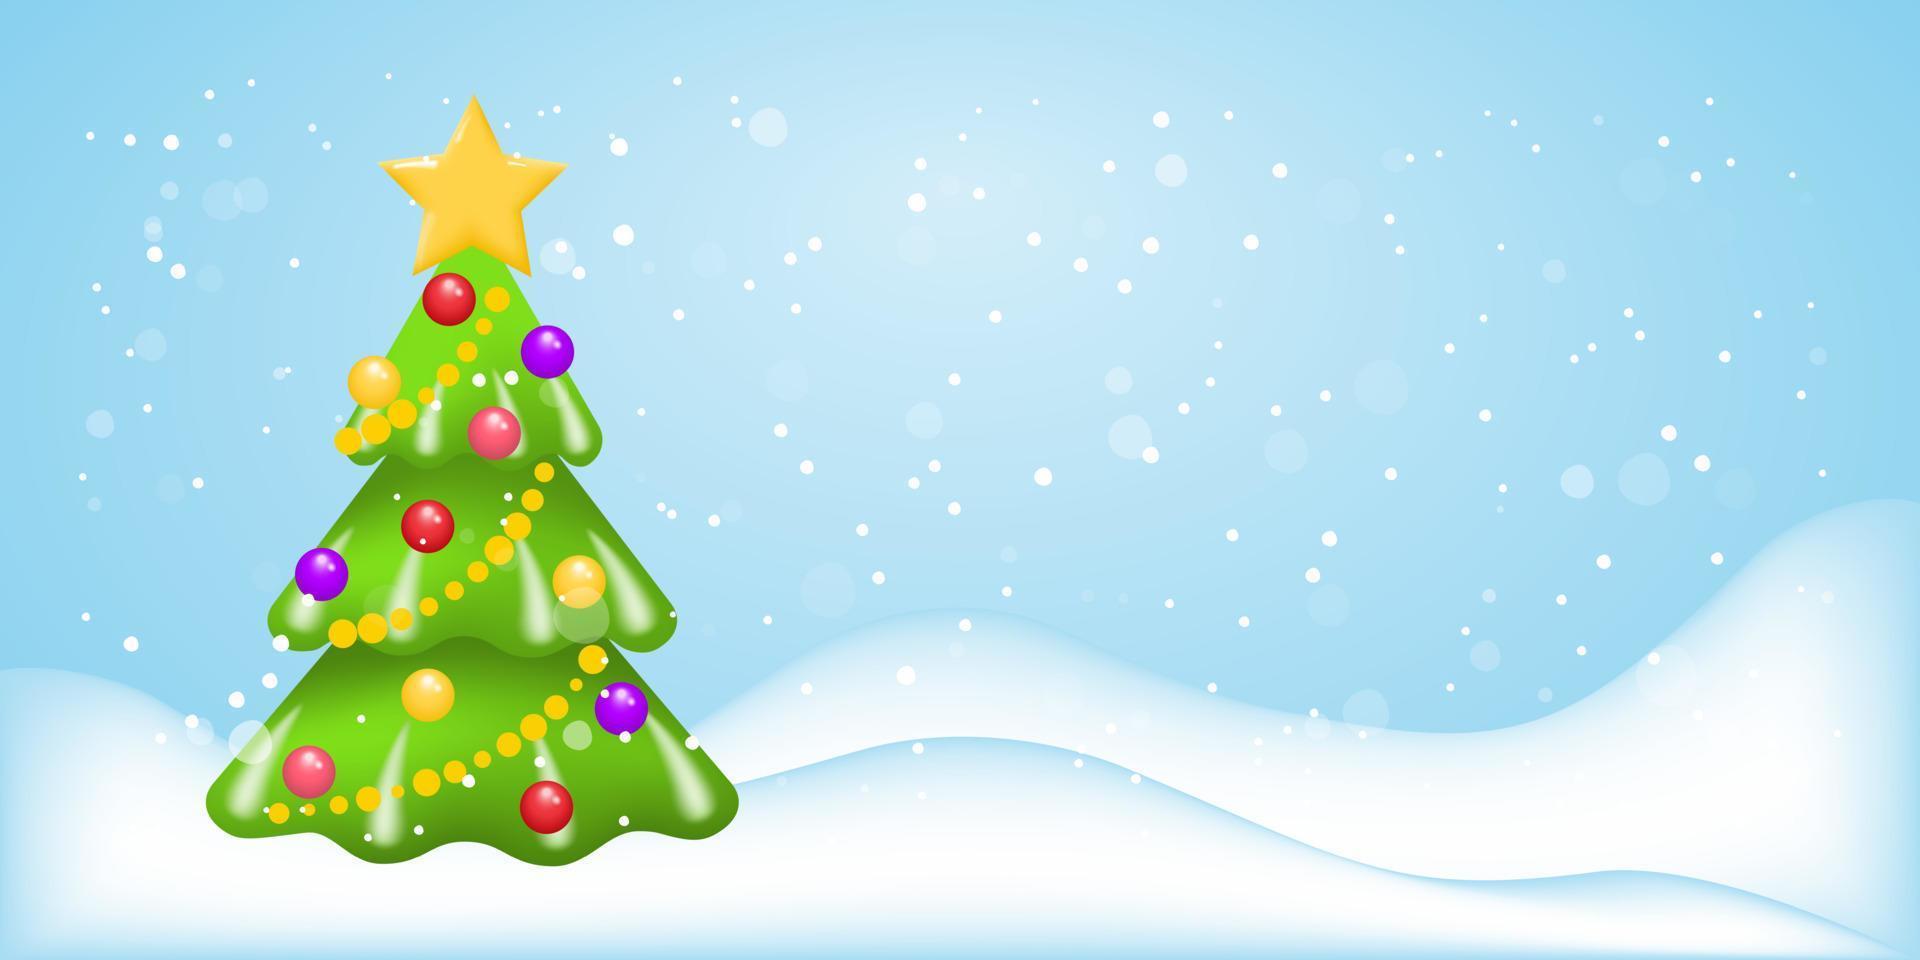 Weihnachtsbaum mit Schnee. festlicher winterhintergrund mit einem geschmückten weihnachtsbaum und schneeverwehungen. vektorvorlage für ein frohes neues jahr oder ein frohes weihnachtsgrußbanner, ein poster oder eine postkarte. Vektor. vektor